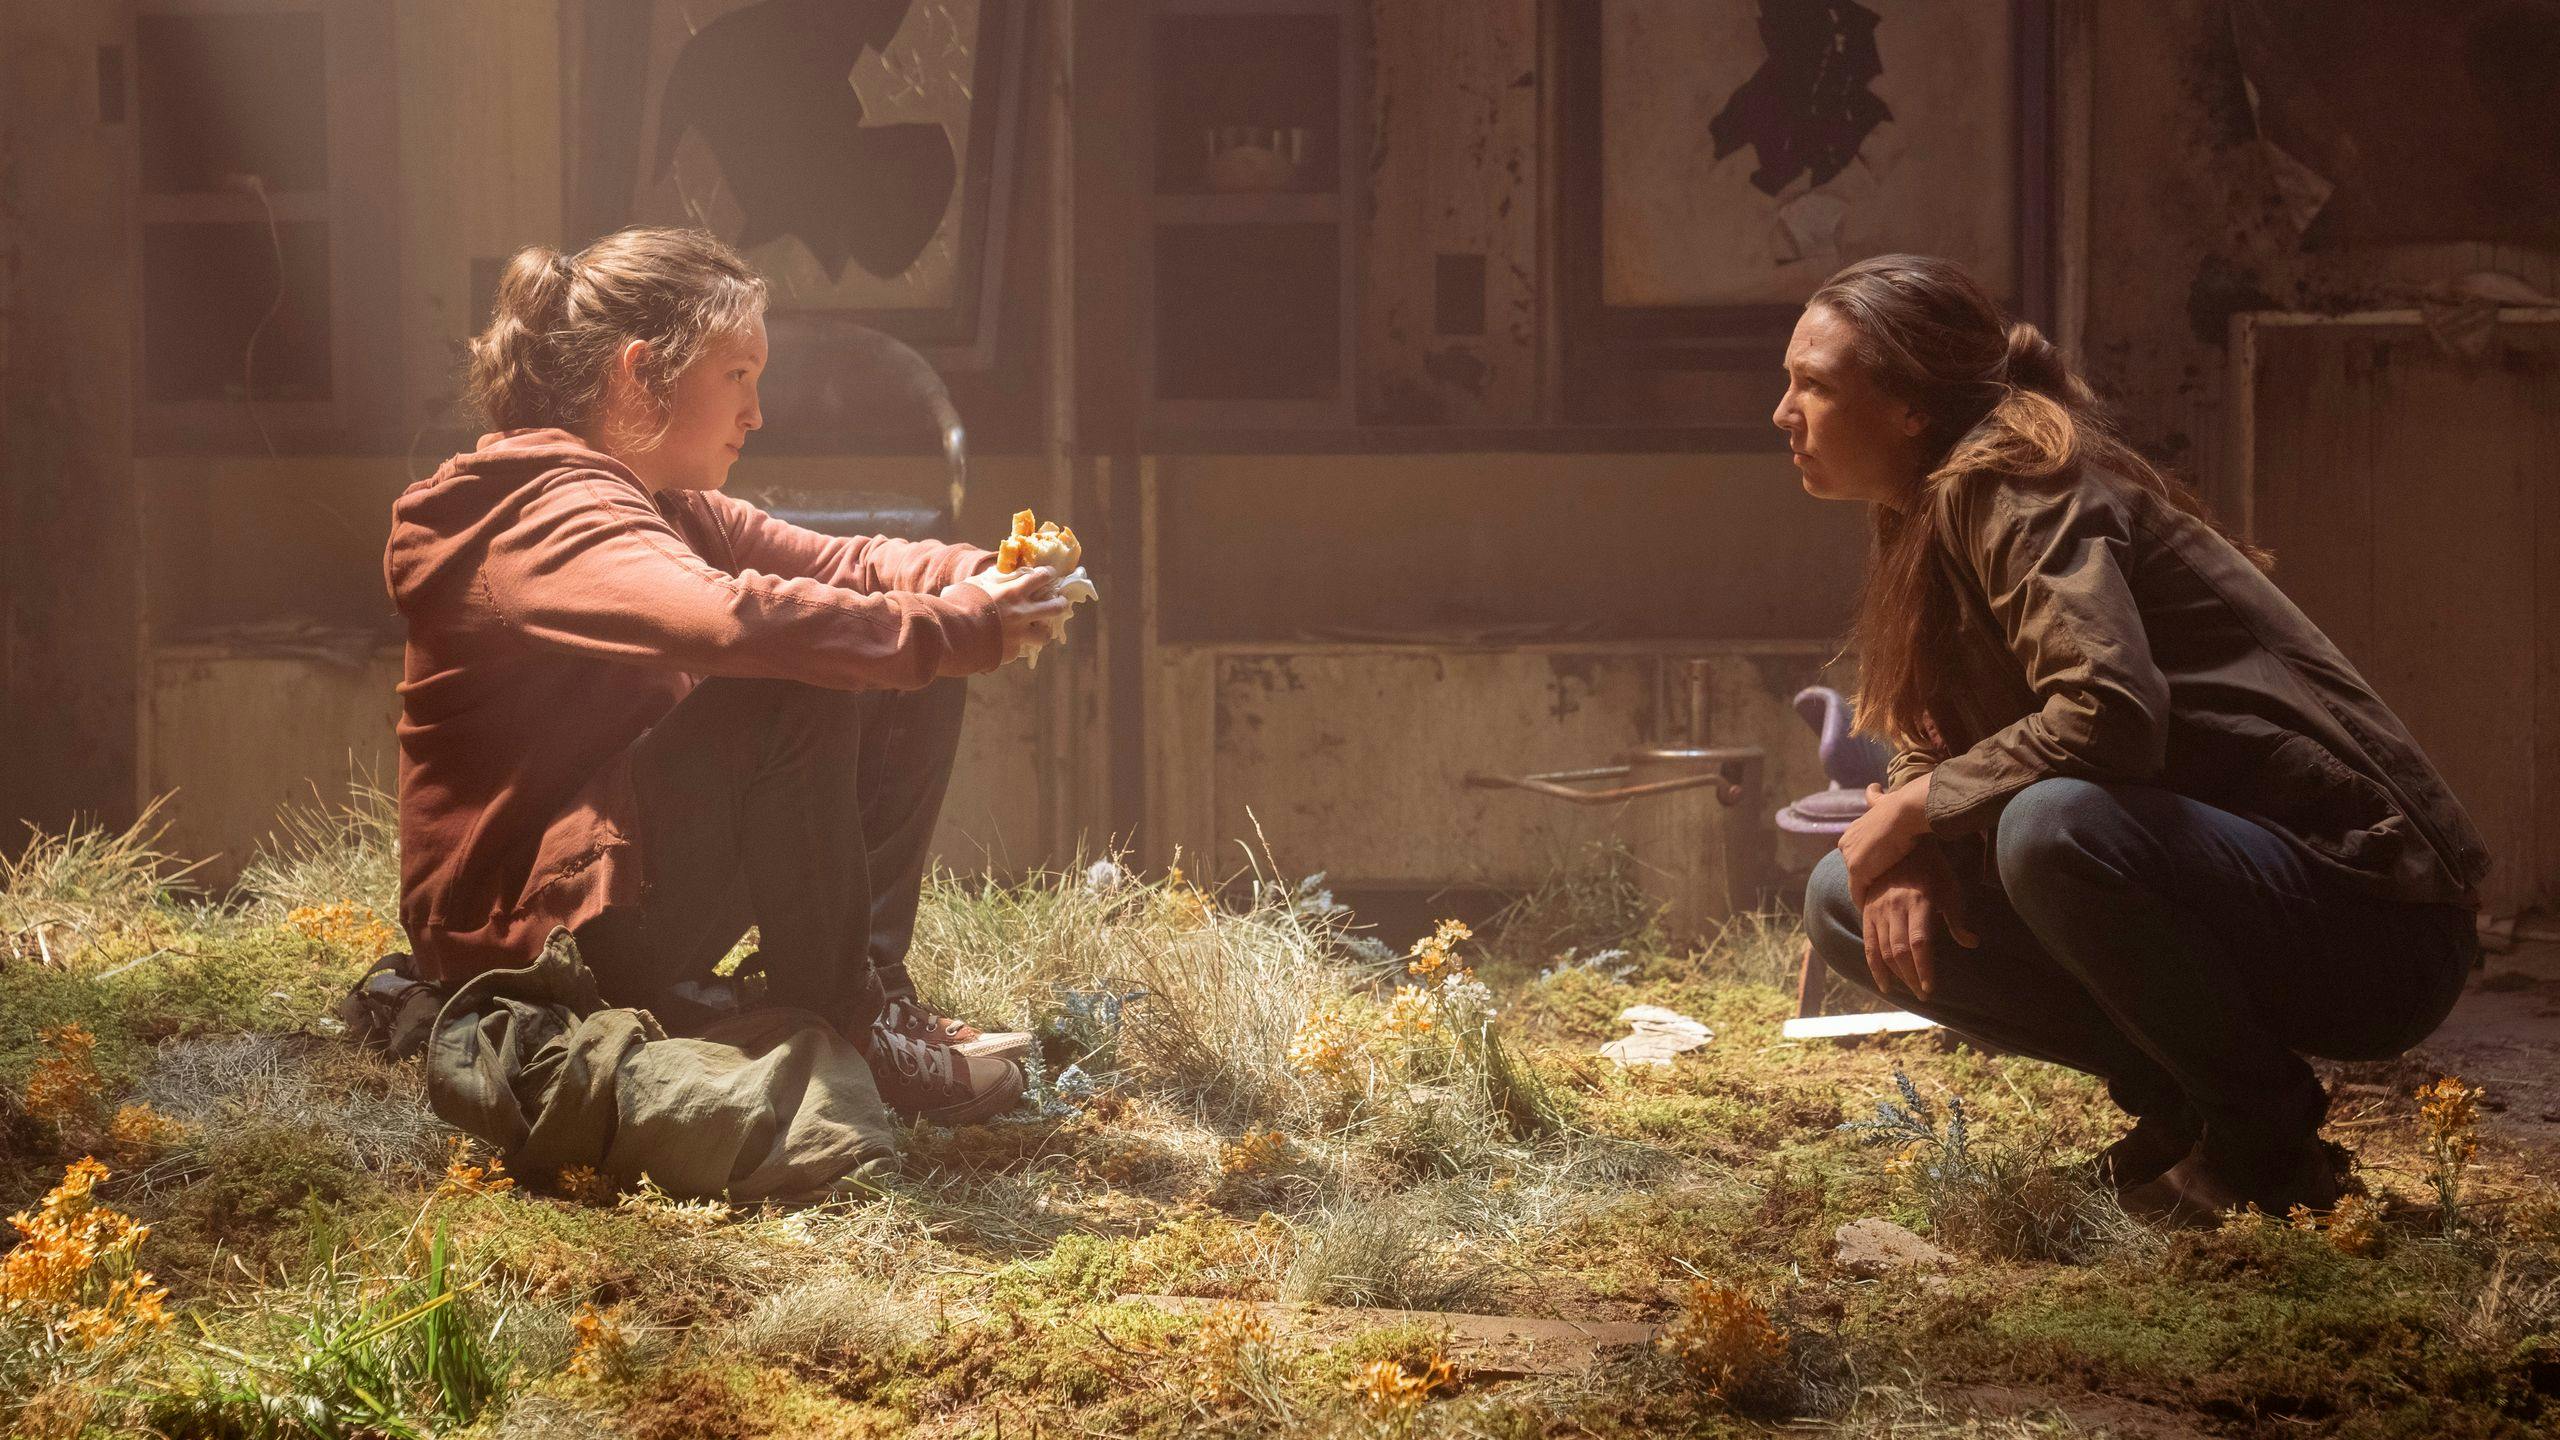 Fotografía promocional de 'The Last of Us', con Bella Ramsey y Anna Torv